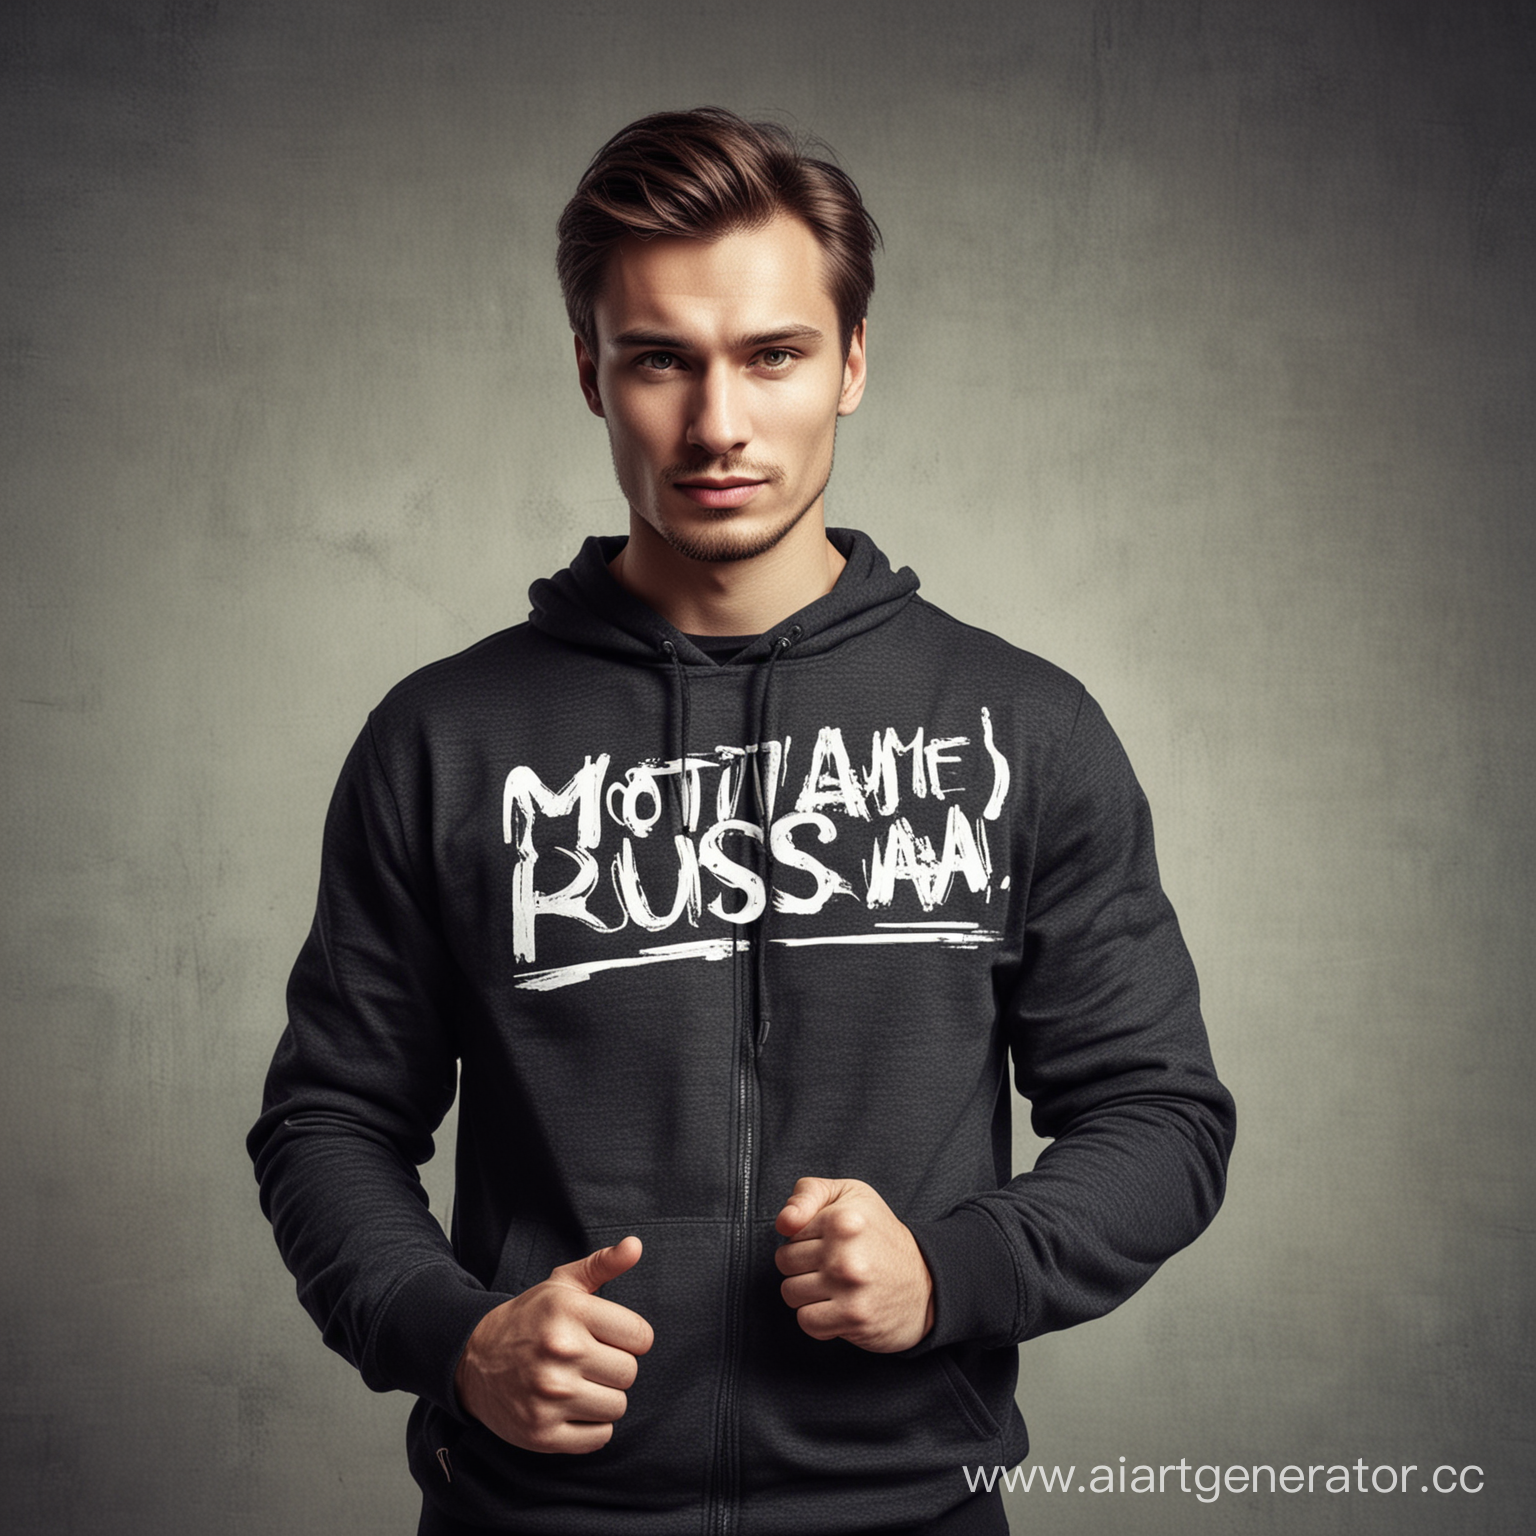 Сделай мотивационную фотографию крутого человека с надписью Motivanti Russia